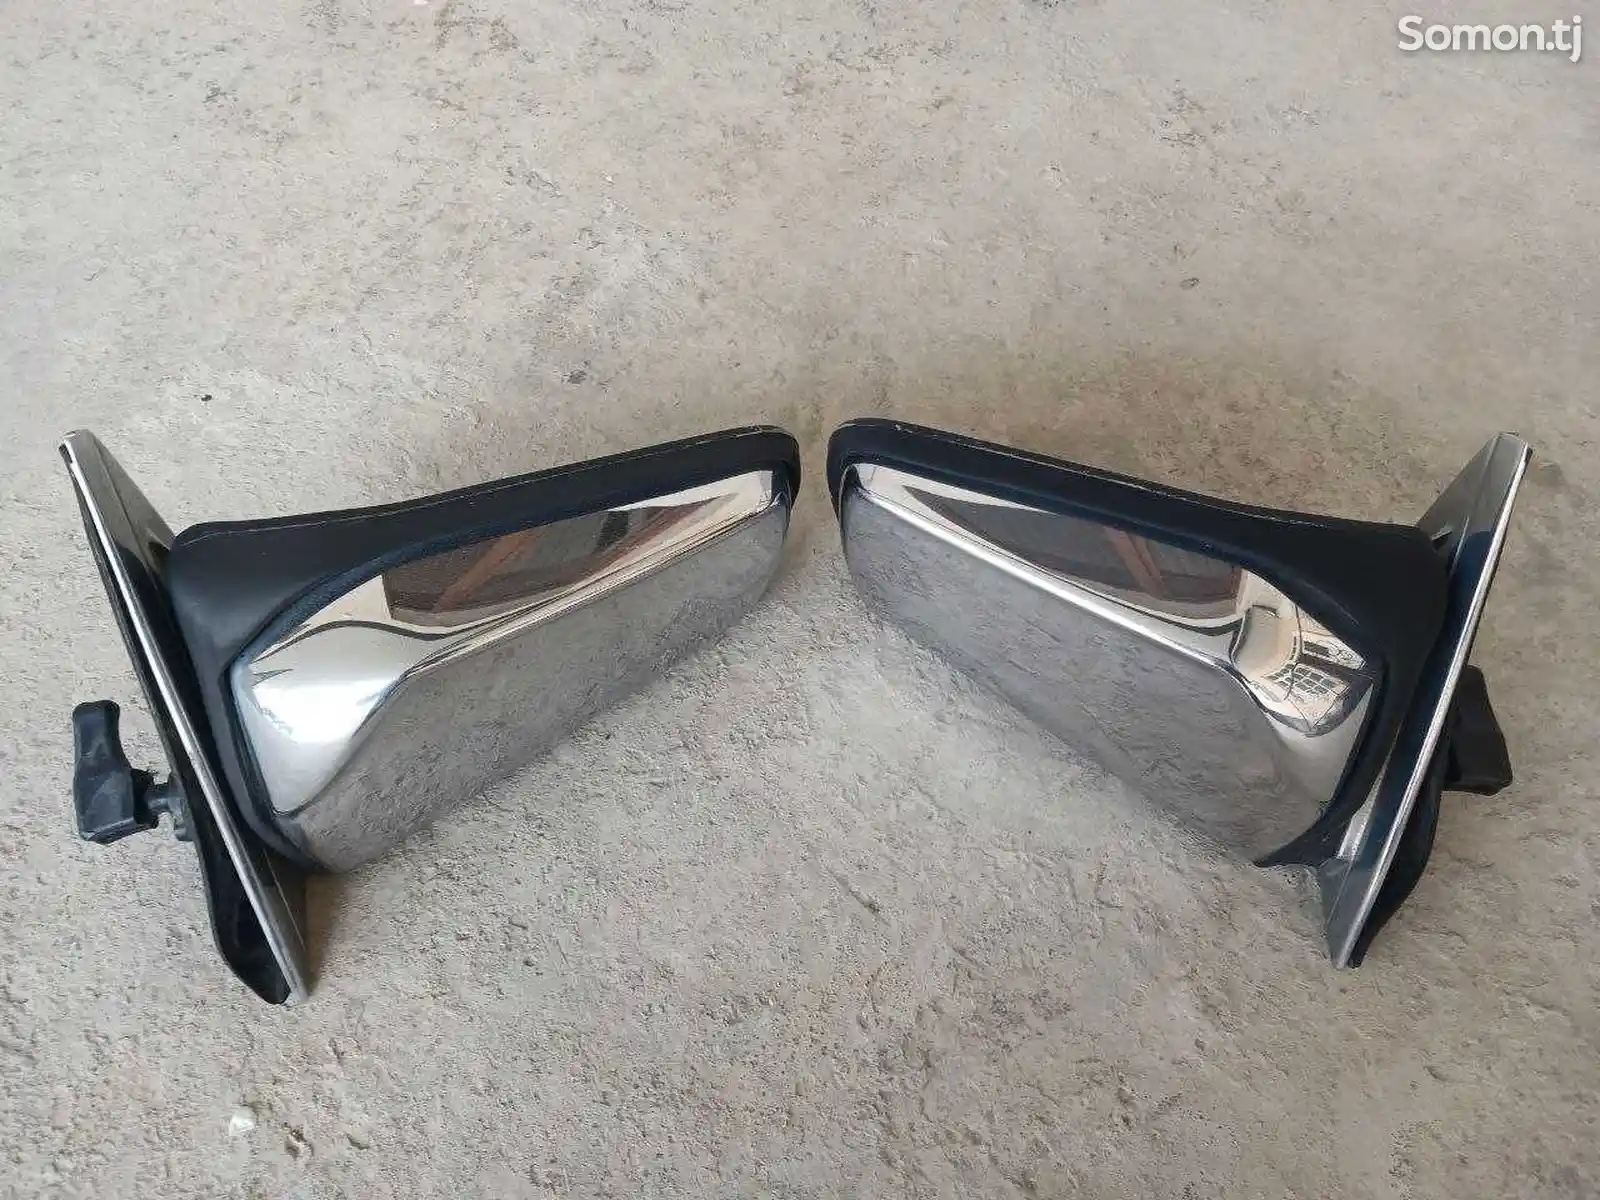 Зеркала заднего вида от Mercedes-Benz W123 и W124-2